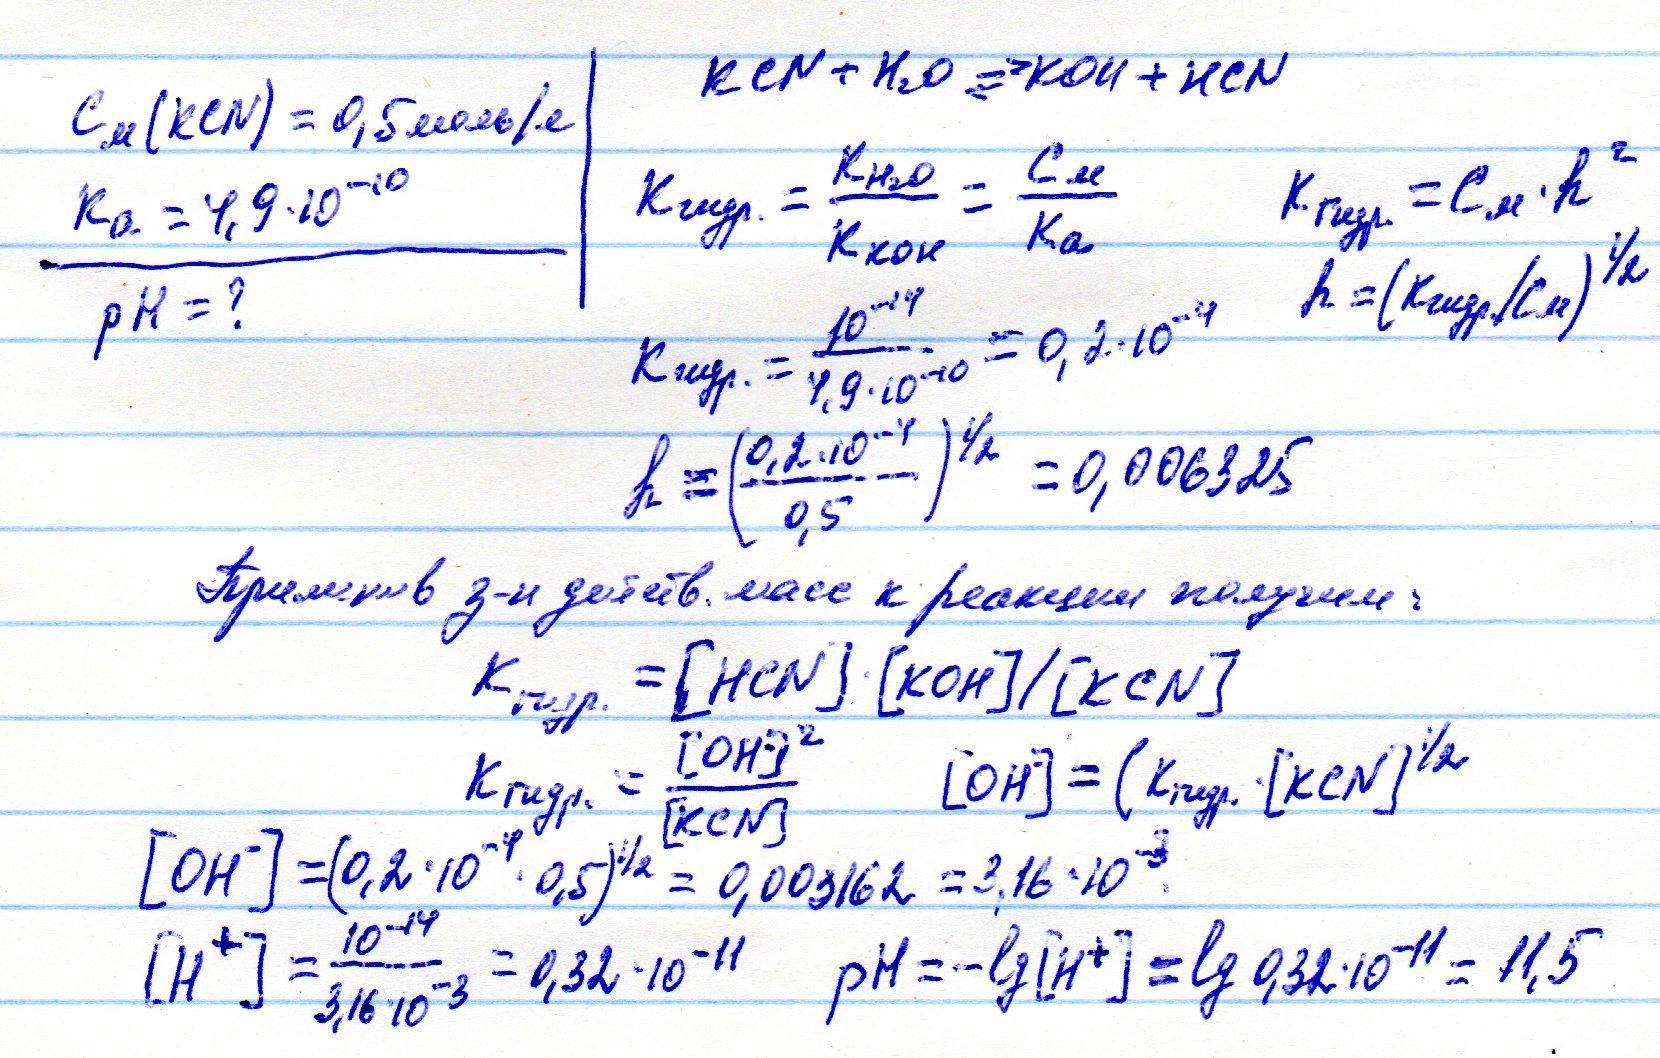 Какая из перечисленных солей подвергается гидролизу: NaNO3, KCN, KCl, Na2SO4? Рассчитать рН раствора, если концентрация этой соли равна 0.5 моль/л, а константа диссоциации основания равна Ка = 4.9 10-10.